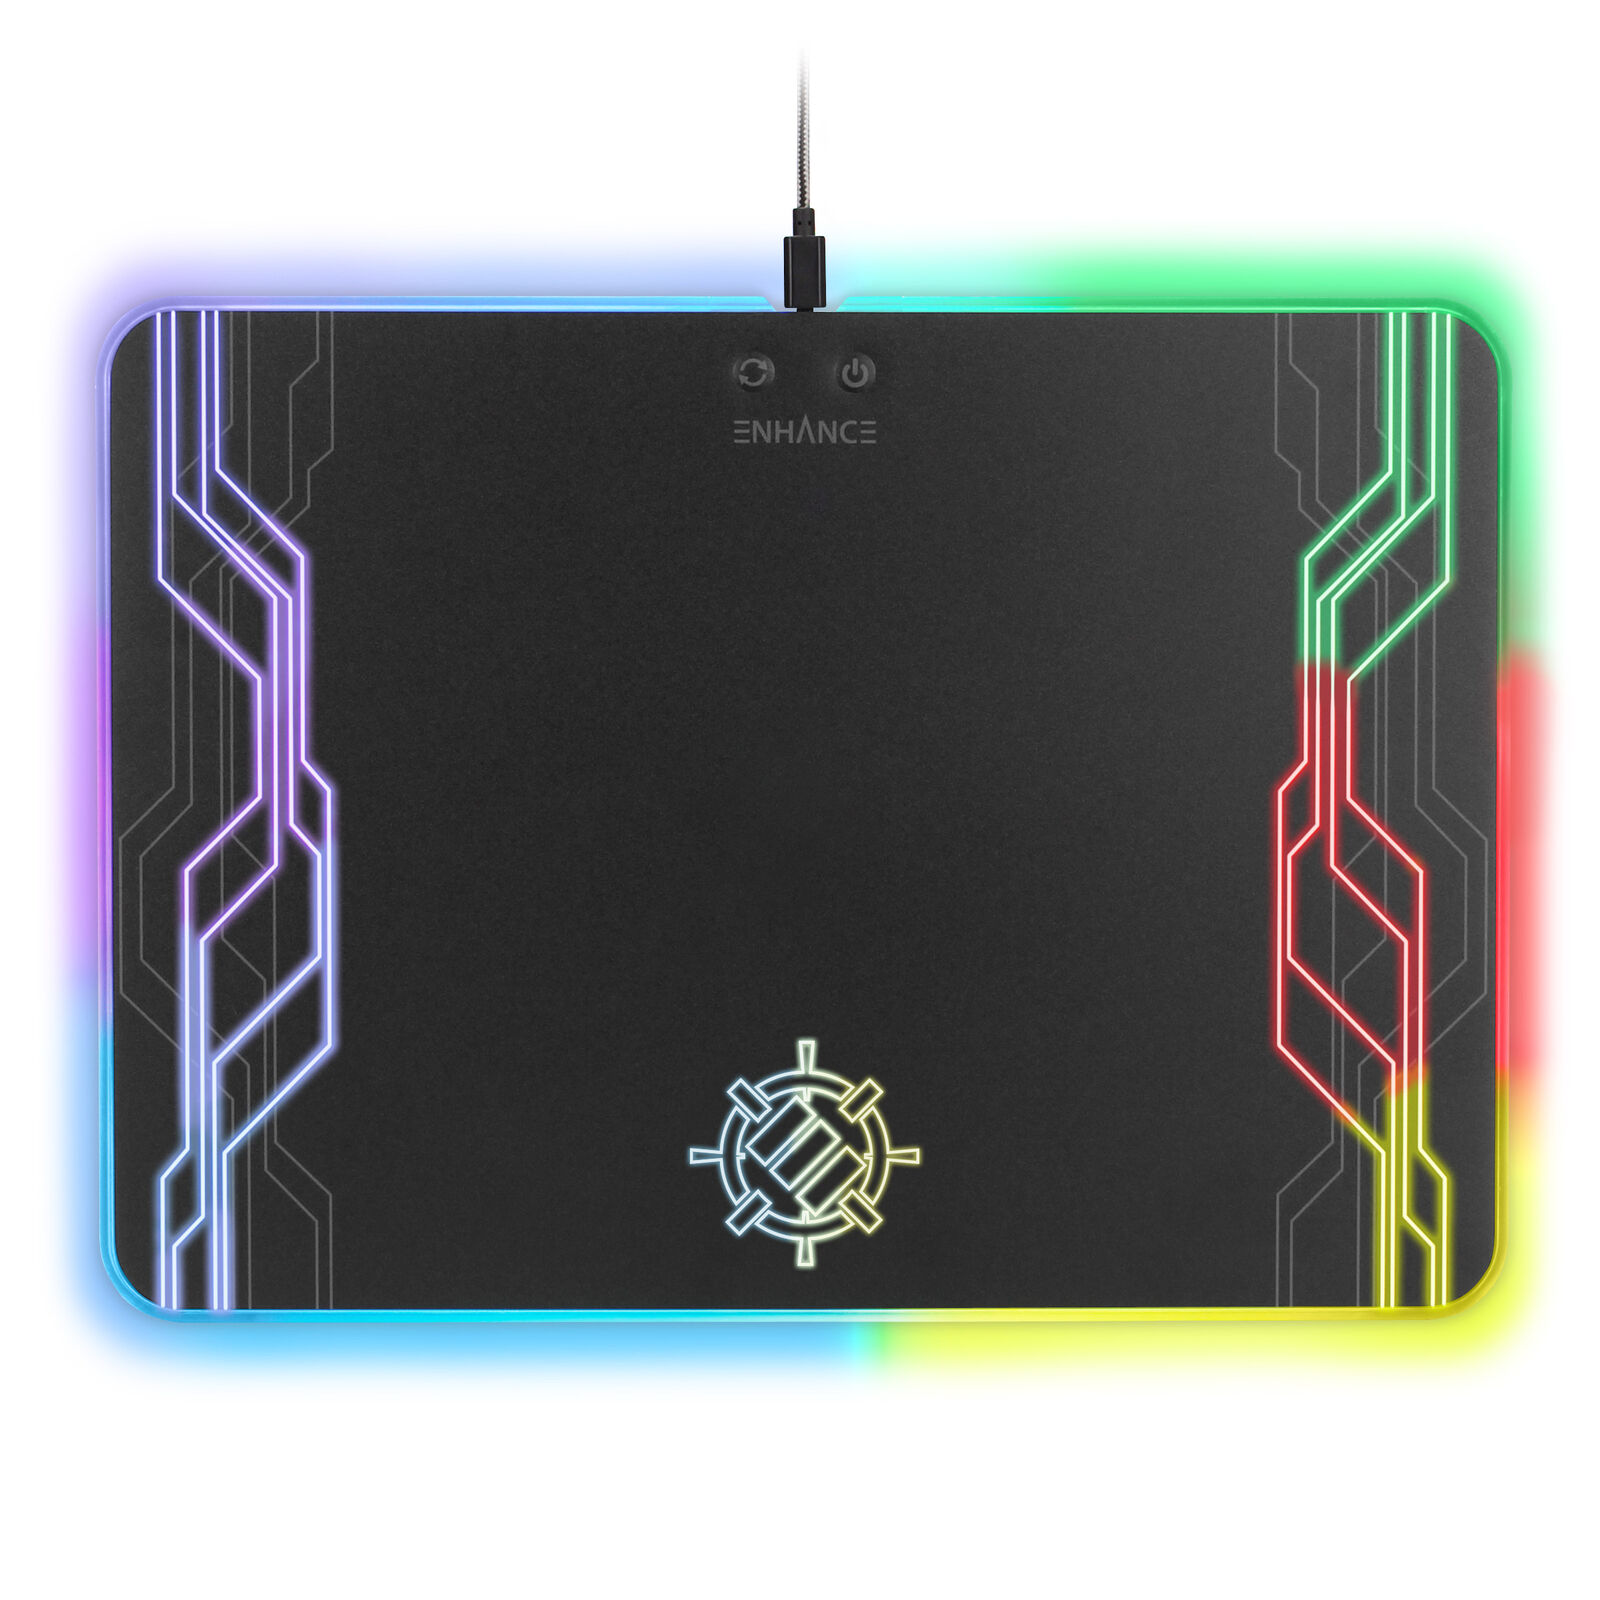 ENHANCE Large Hard Surface LED Gaming Mouse Pad - 7 RGB Light Up Modes